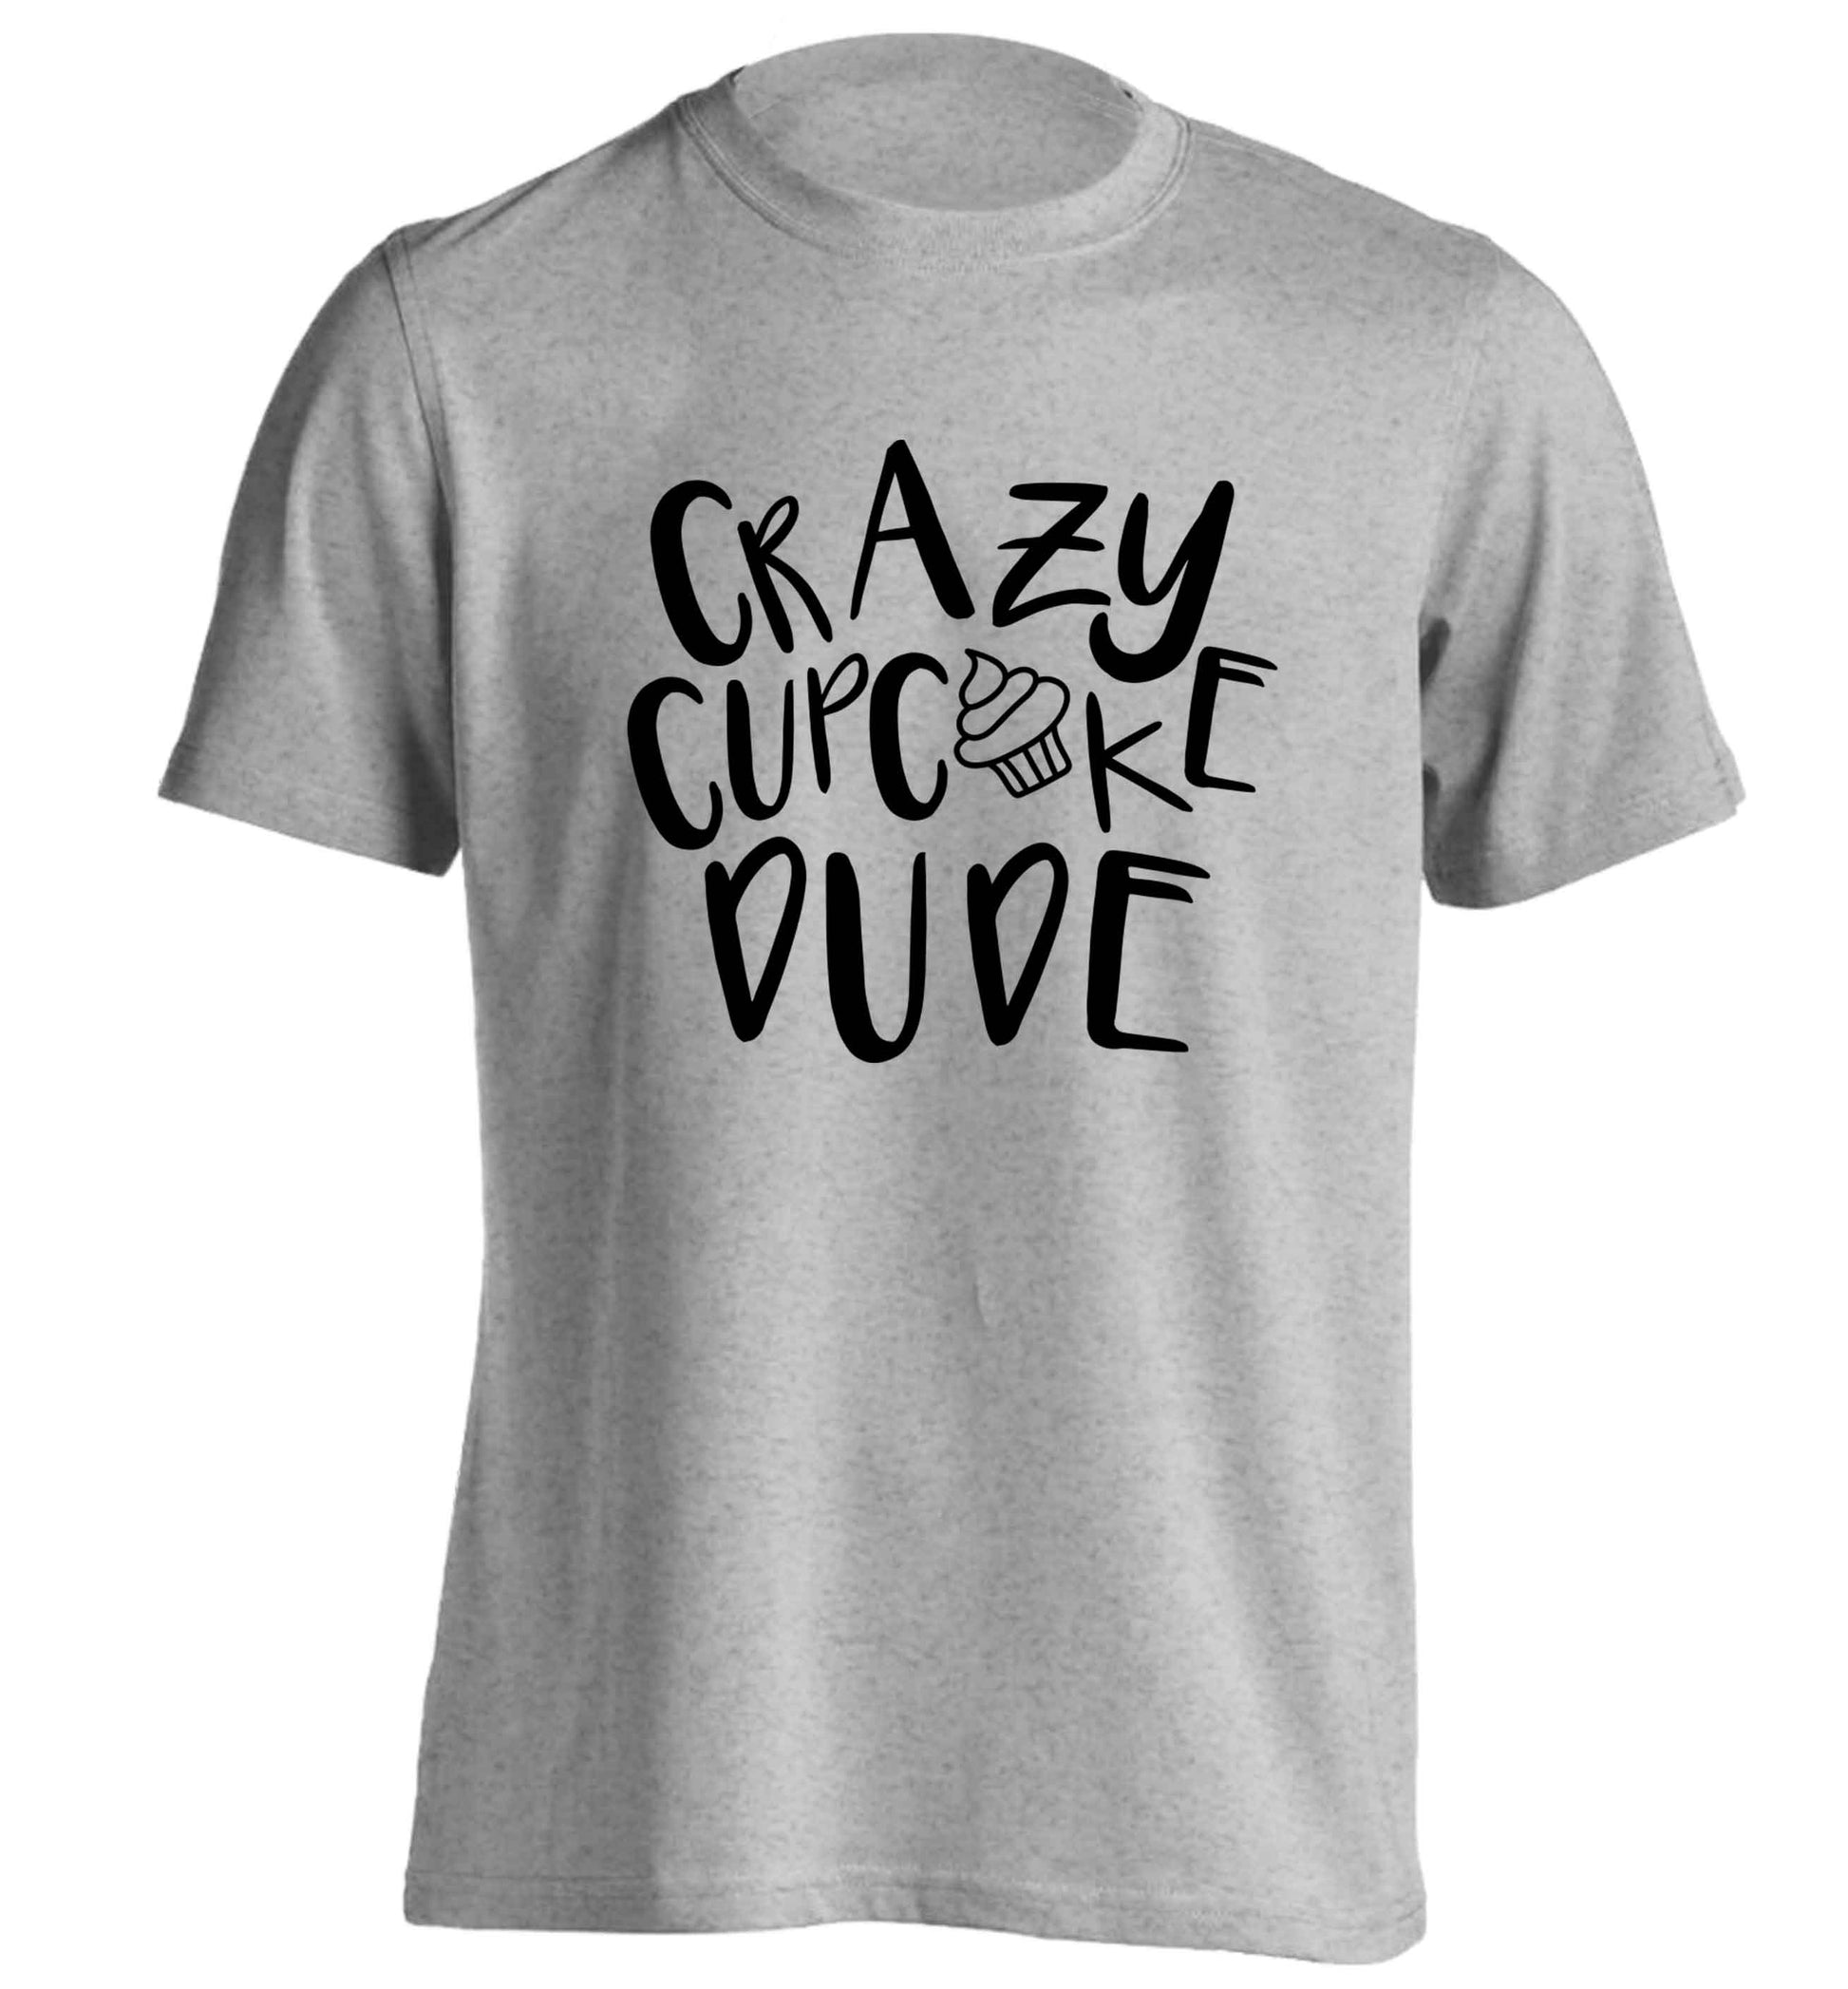 Crazy cupcake dude adults unisex grey Tshirt 2XL